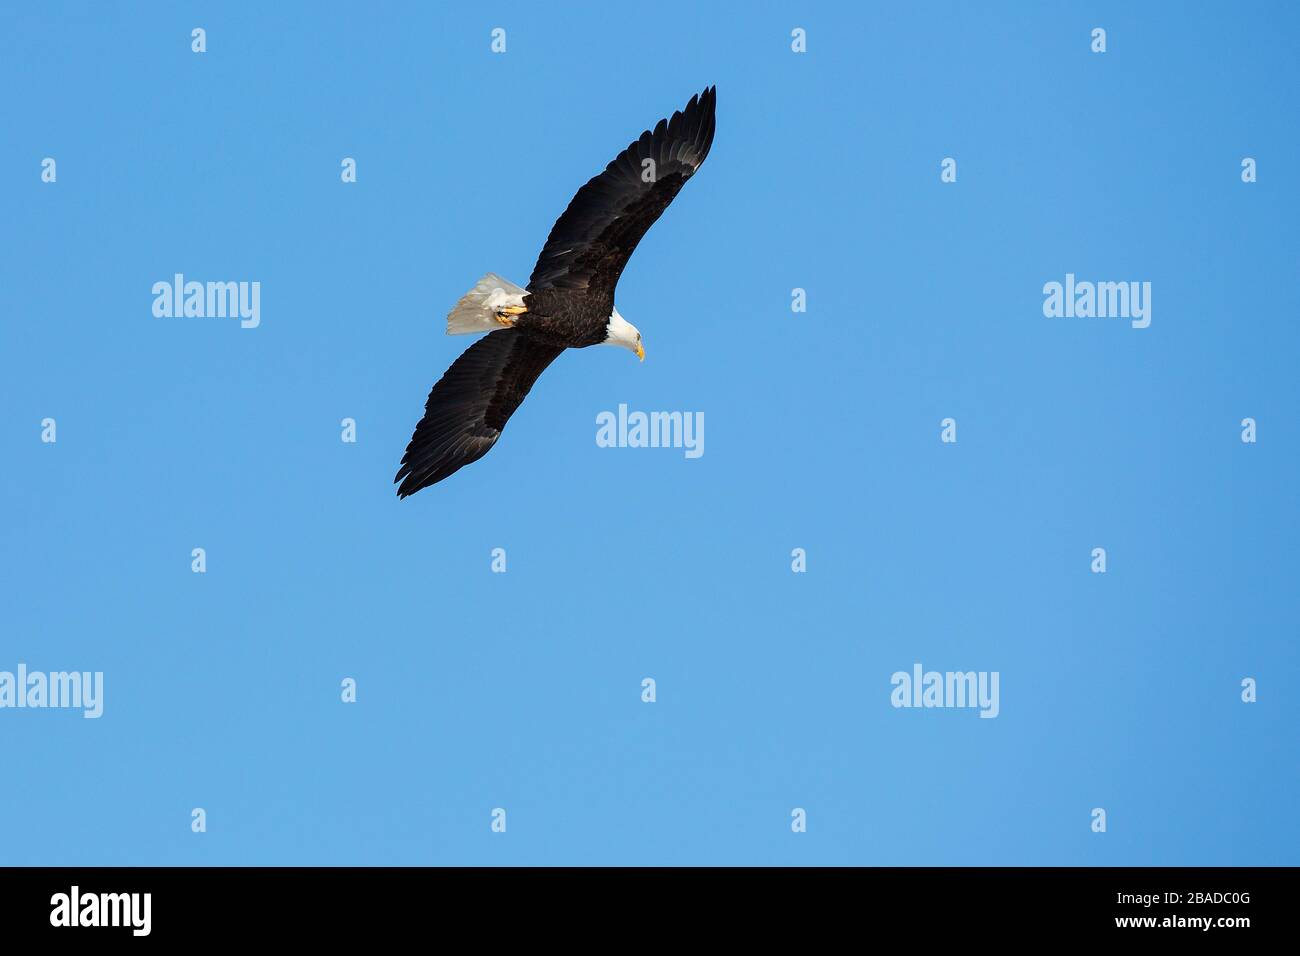 Kahladler im Flug am blauen Himmel mit voller Flügelspannweite. Stockfoto